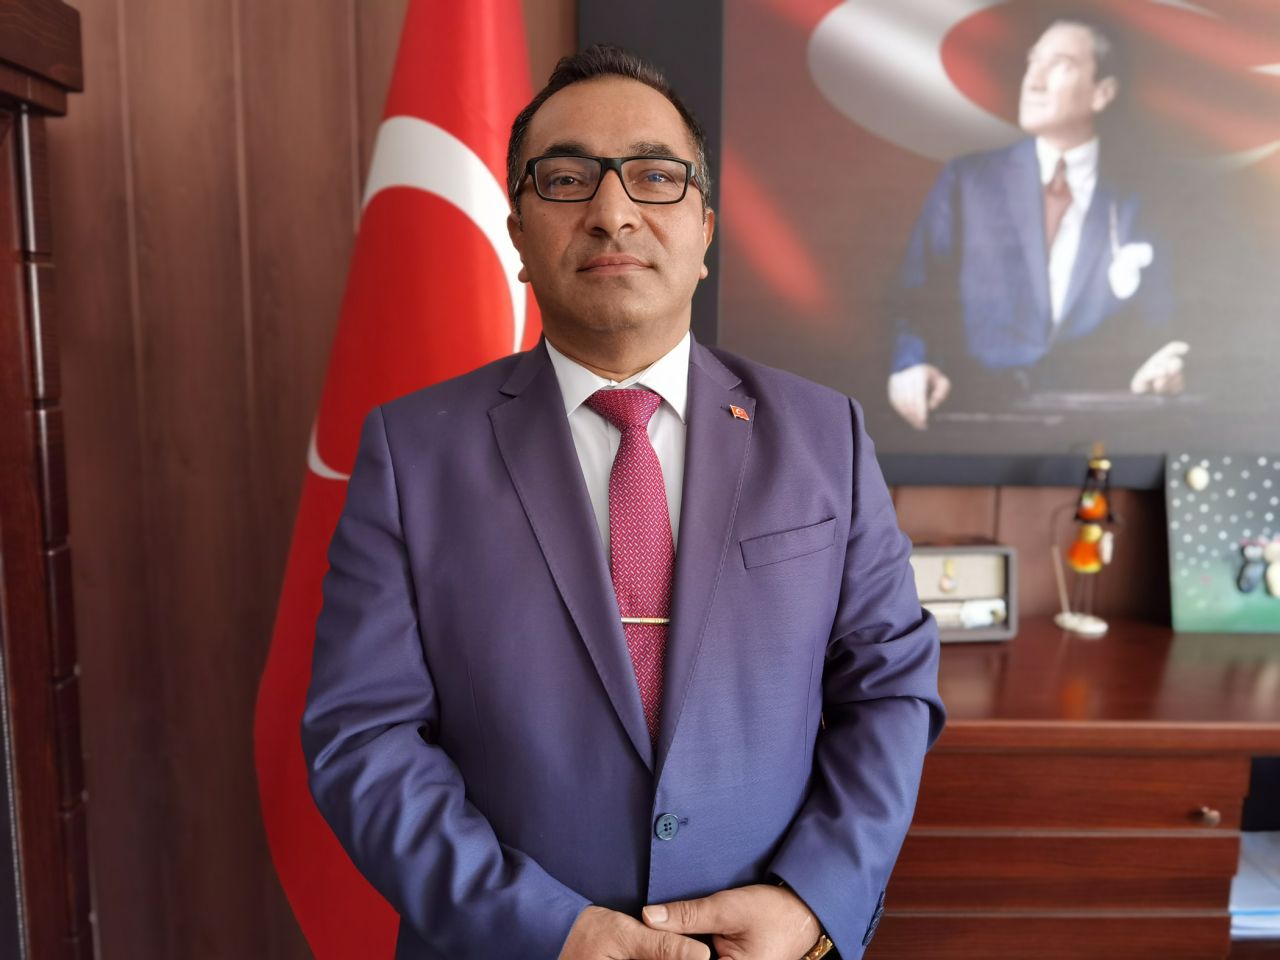 Tunceli'de eğitim böyle başladı, belediye başkanı isyan etti: Halk ve öğrenciler tepkili - Sayfa:3